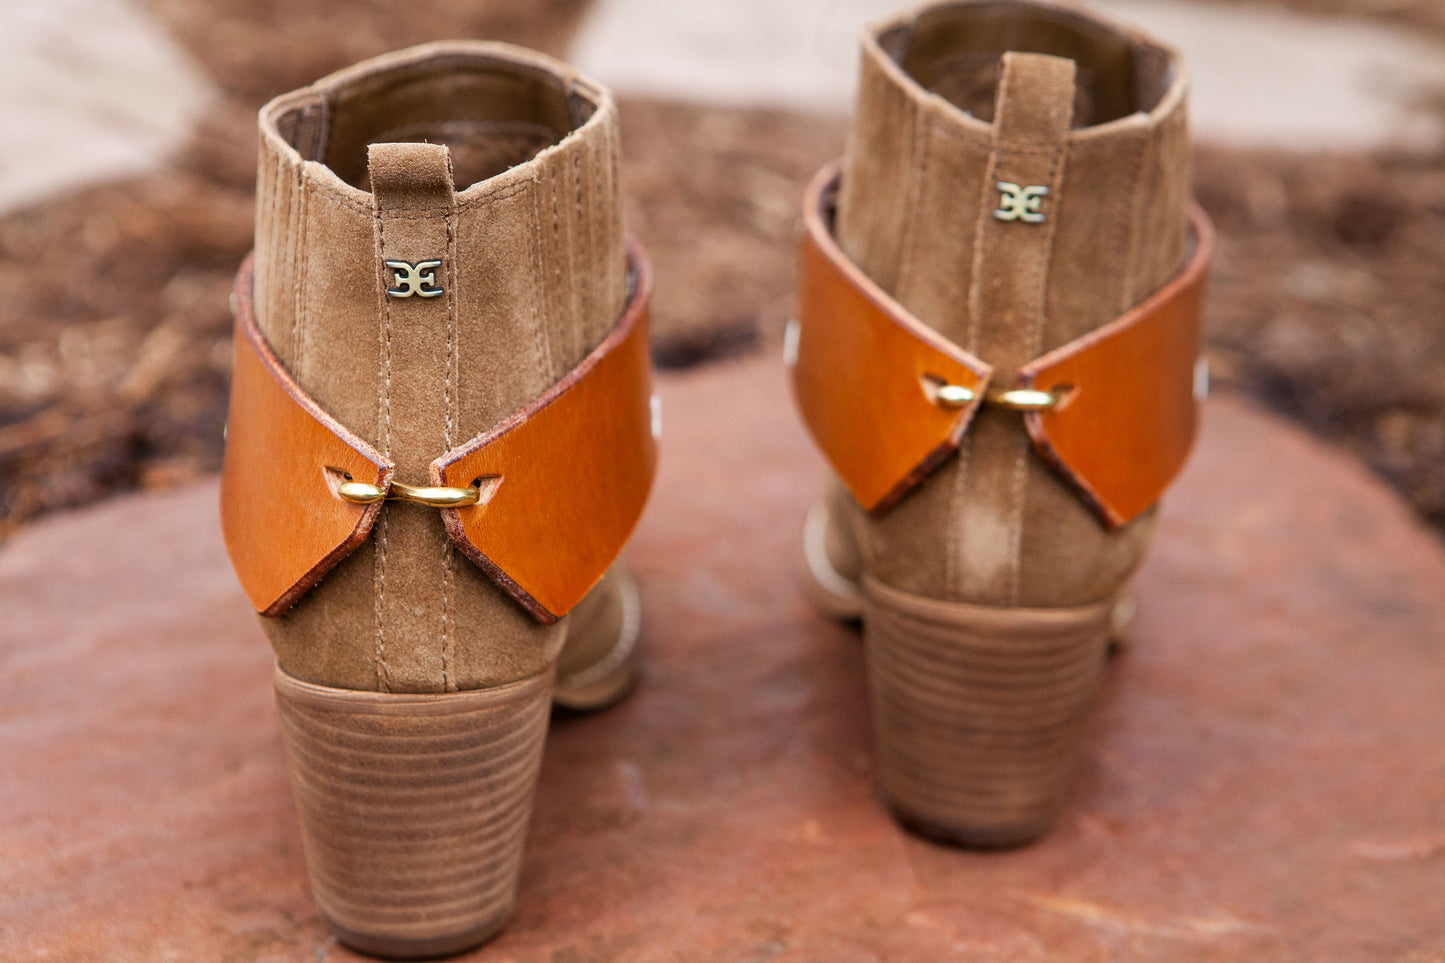 El Suroeste - Handmade Premium Leather Boot Cuffs by Hoof & Heel